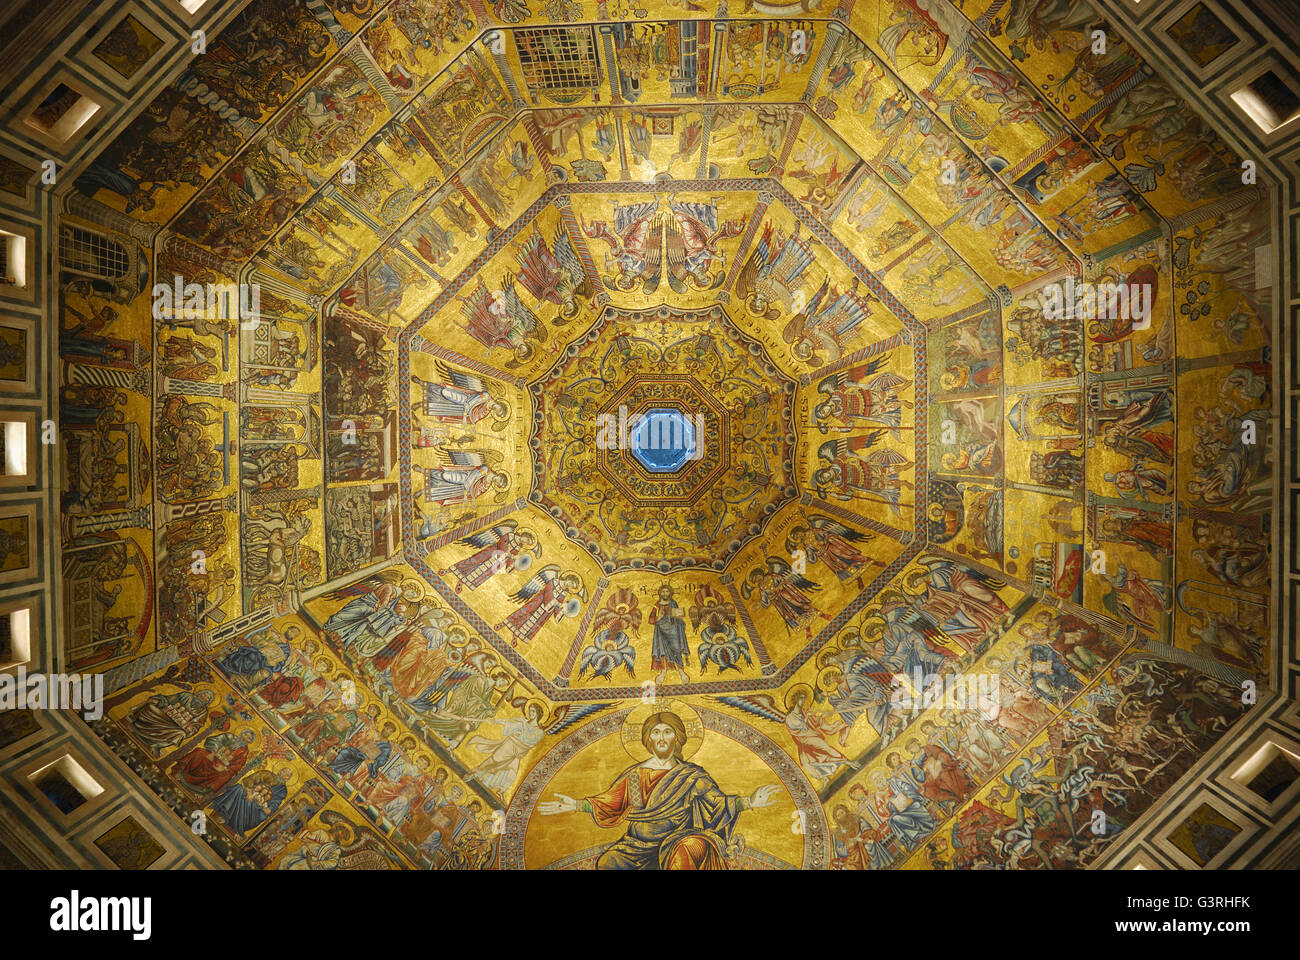 Mosaik-bedeckten Innenraum der achteckigen Kuppel. Florenz Baptisterium, auch bekannt als das Baptisterium des Heiligen Johannes, ist eine religiöse b Stockfoto